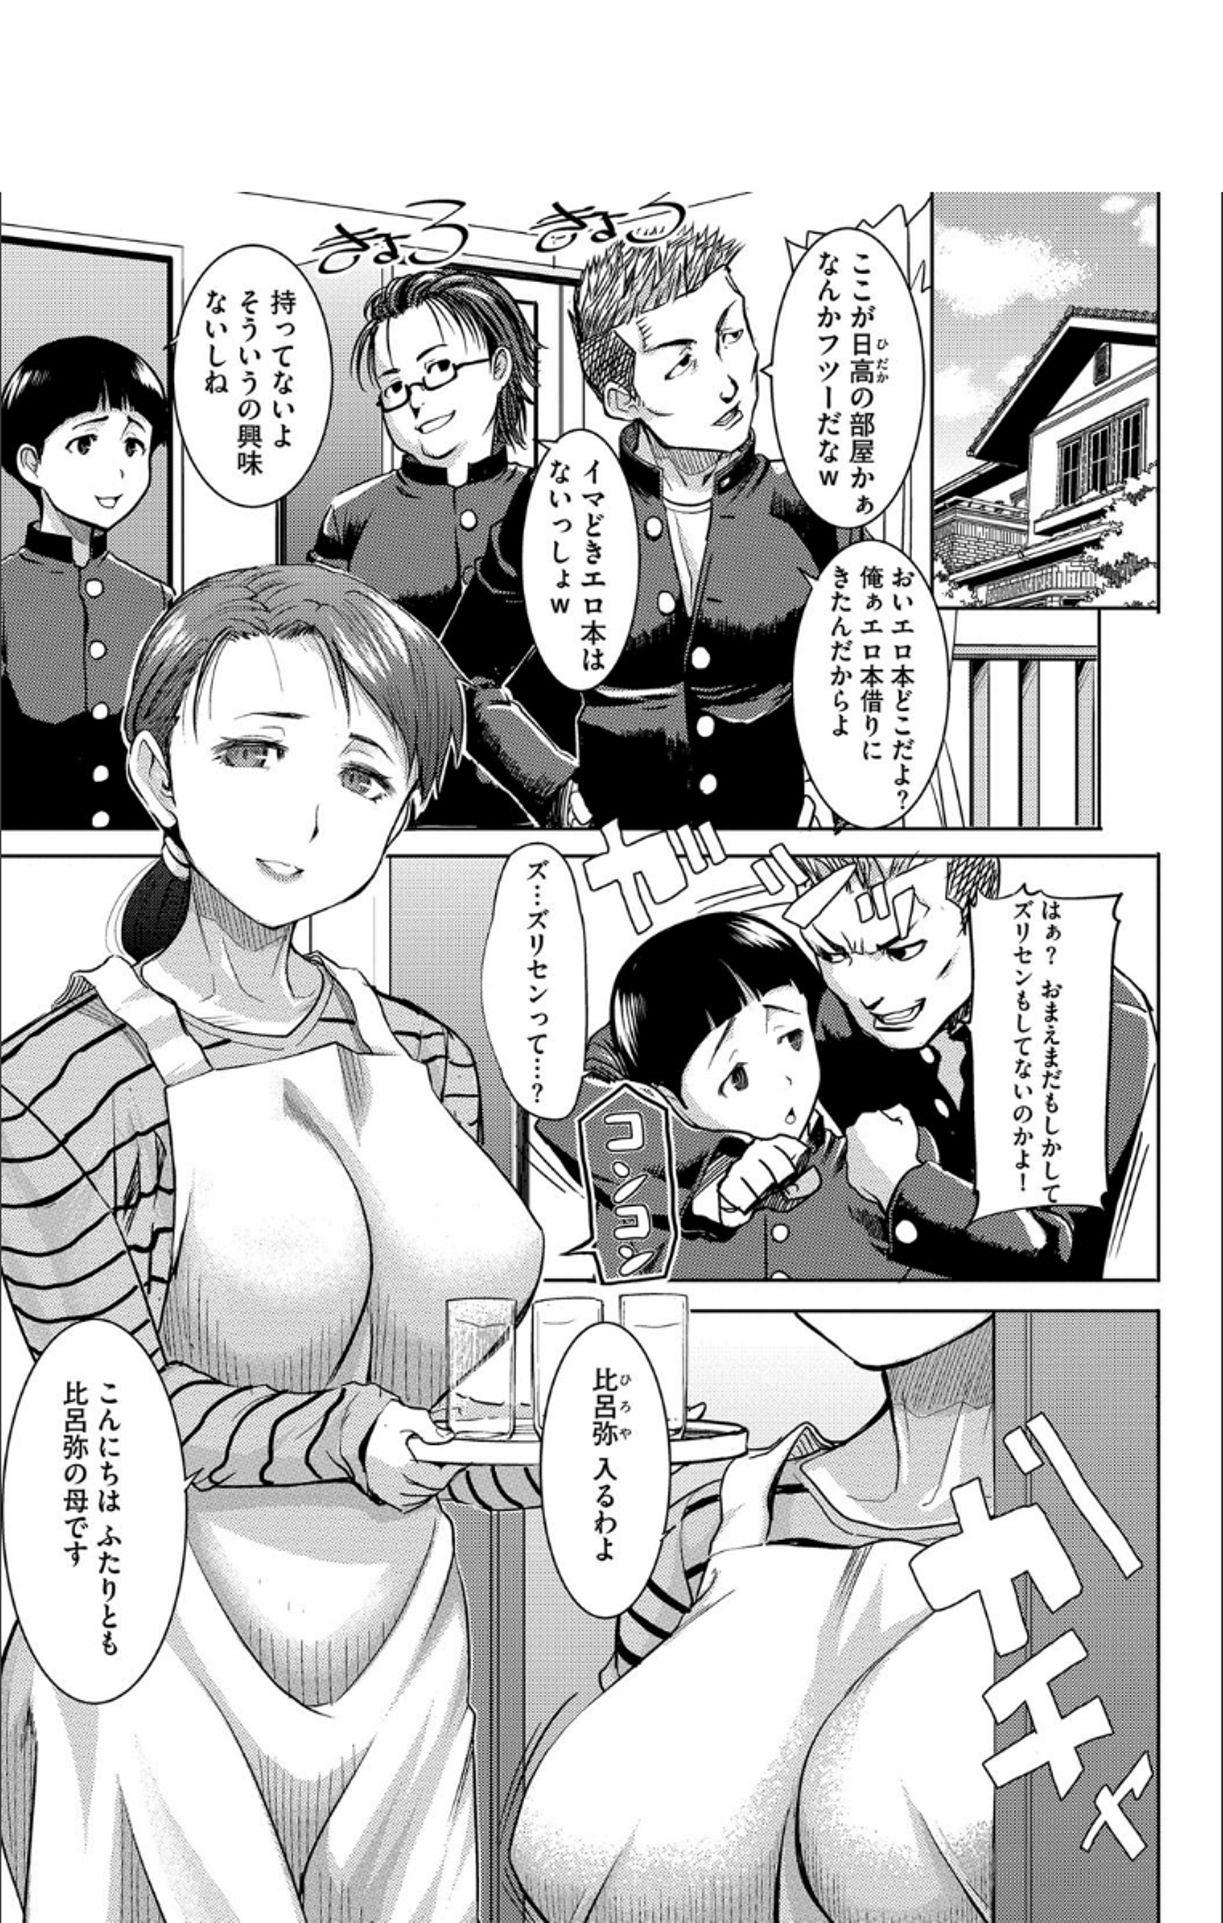 Young Boku no Kazoku o Sarashimasu + DMM Gentei Tokuten Paper Punishment - Page 6